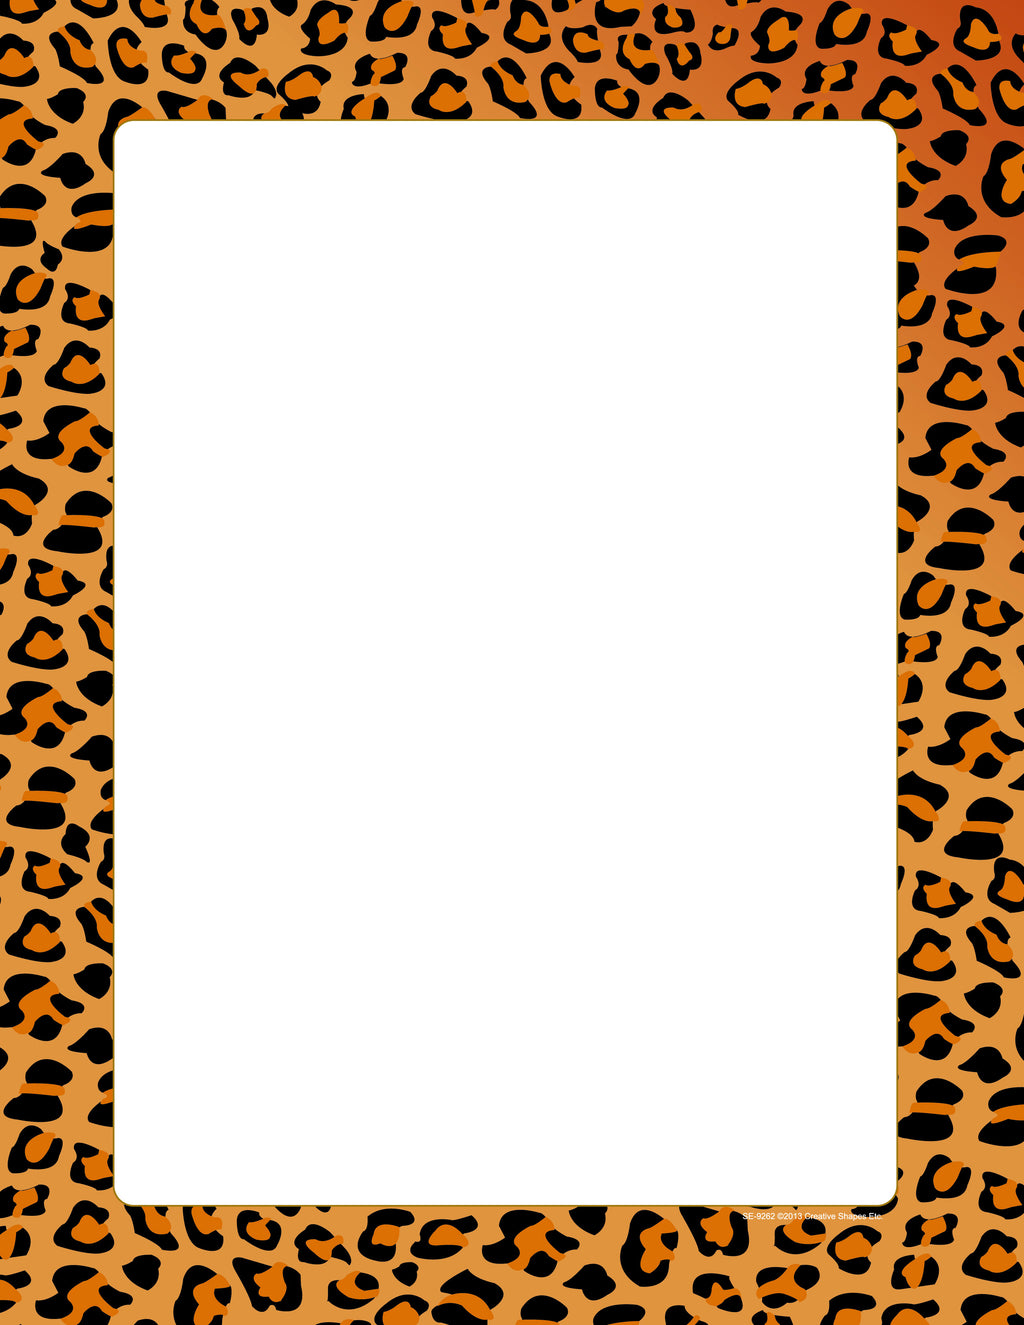 Designer Paper - Leopard (50 Sheet Package) - Creative Shapes Etc.